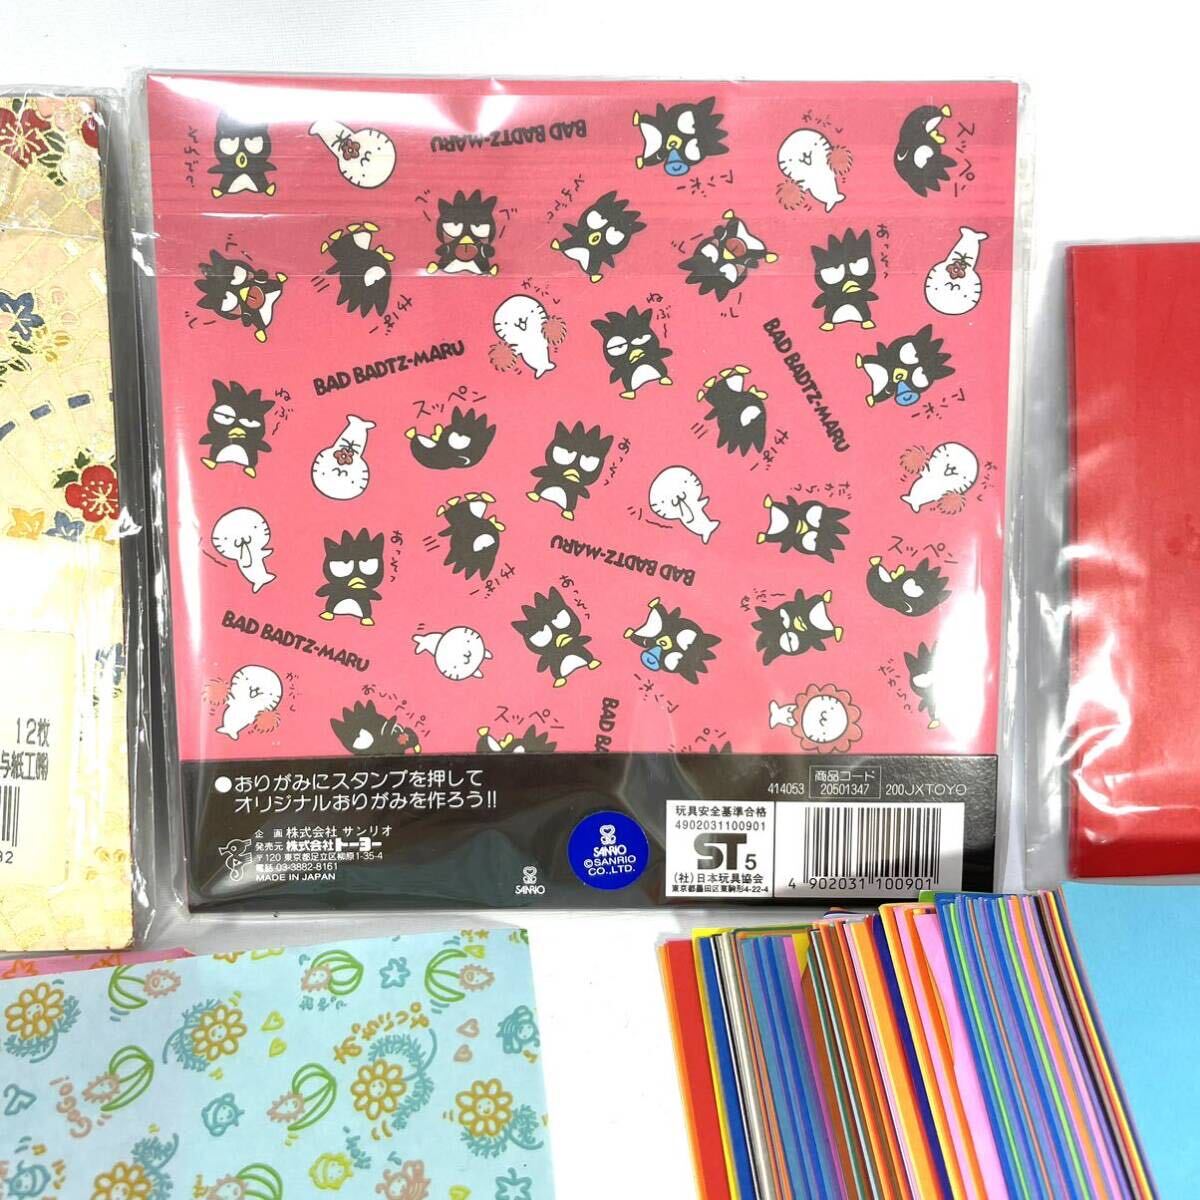  оригами различный роза оригами oligami цветная бумага .... Sanrio Sanrio Ba-Tsu круг kun штамп имеется японская бумага .. японская бумага продажа комплектом комплект продажа 